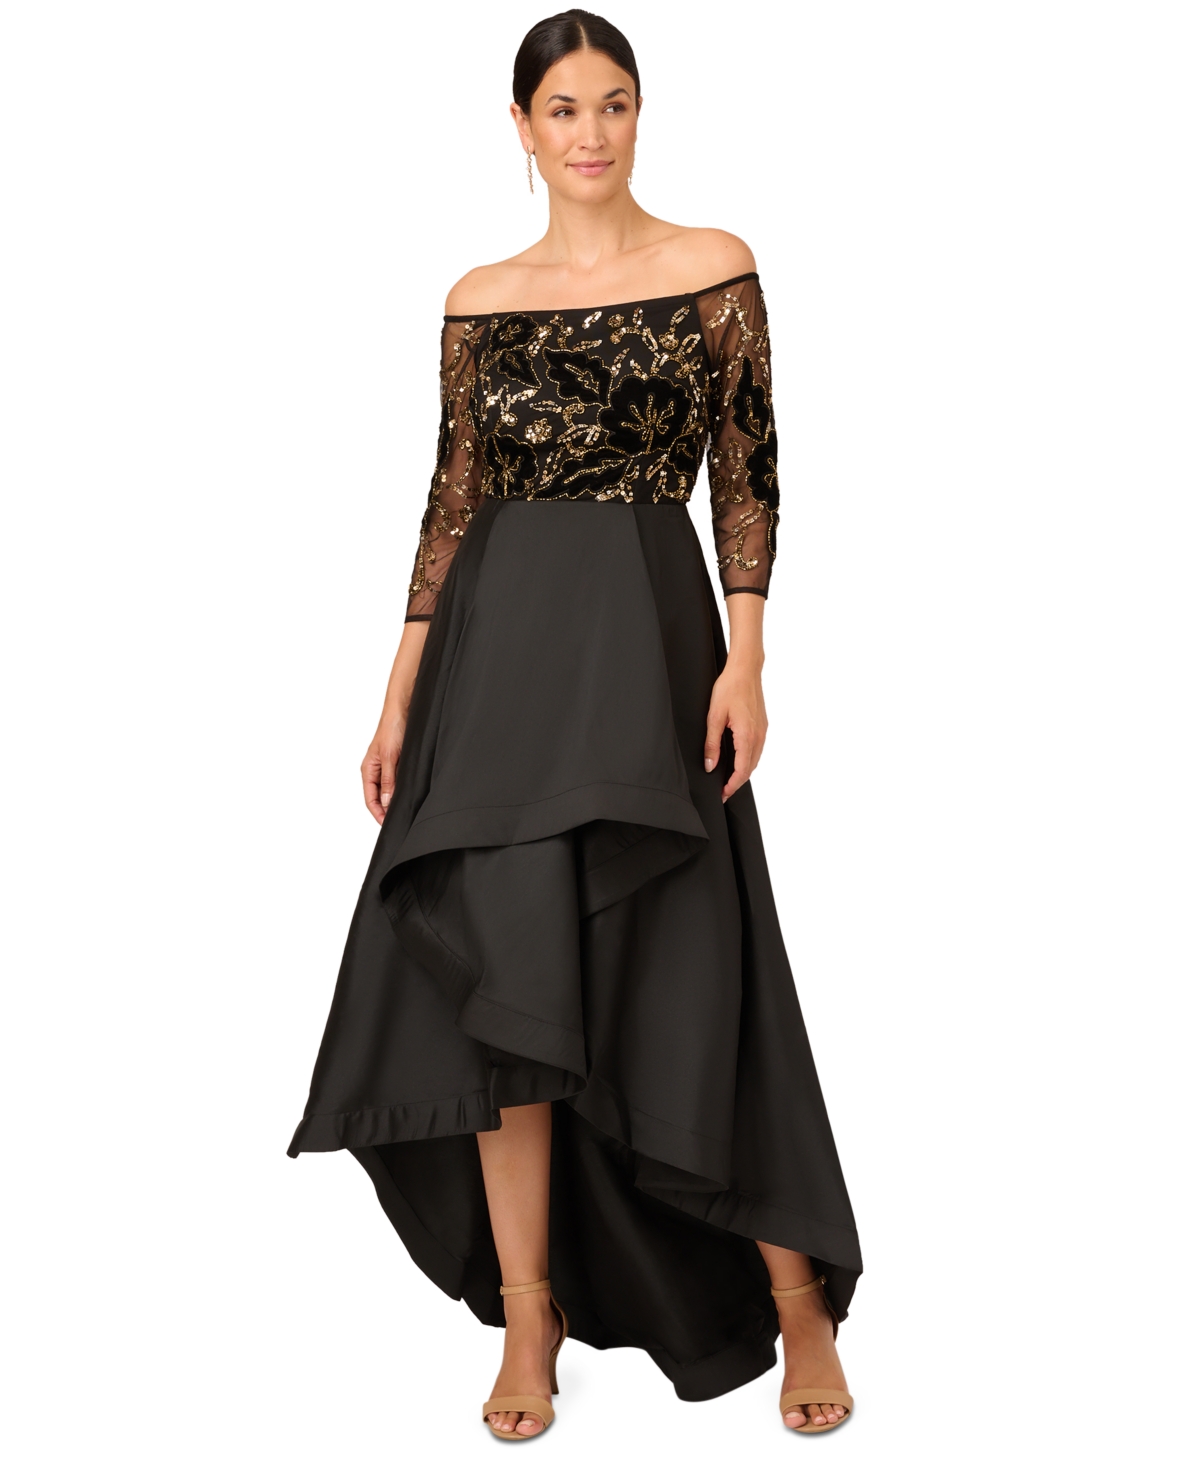 Beaded Taffeta-Skirt Gown - Black/Gold